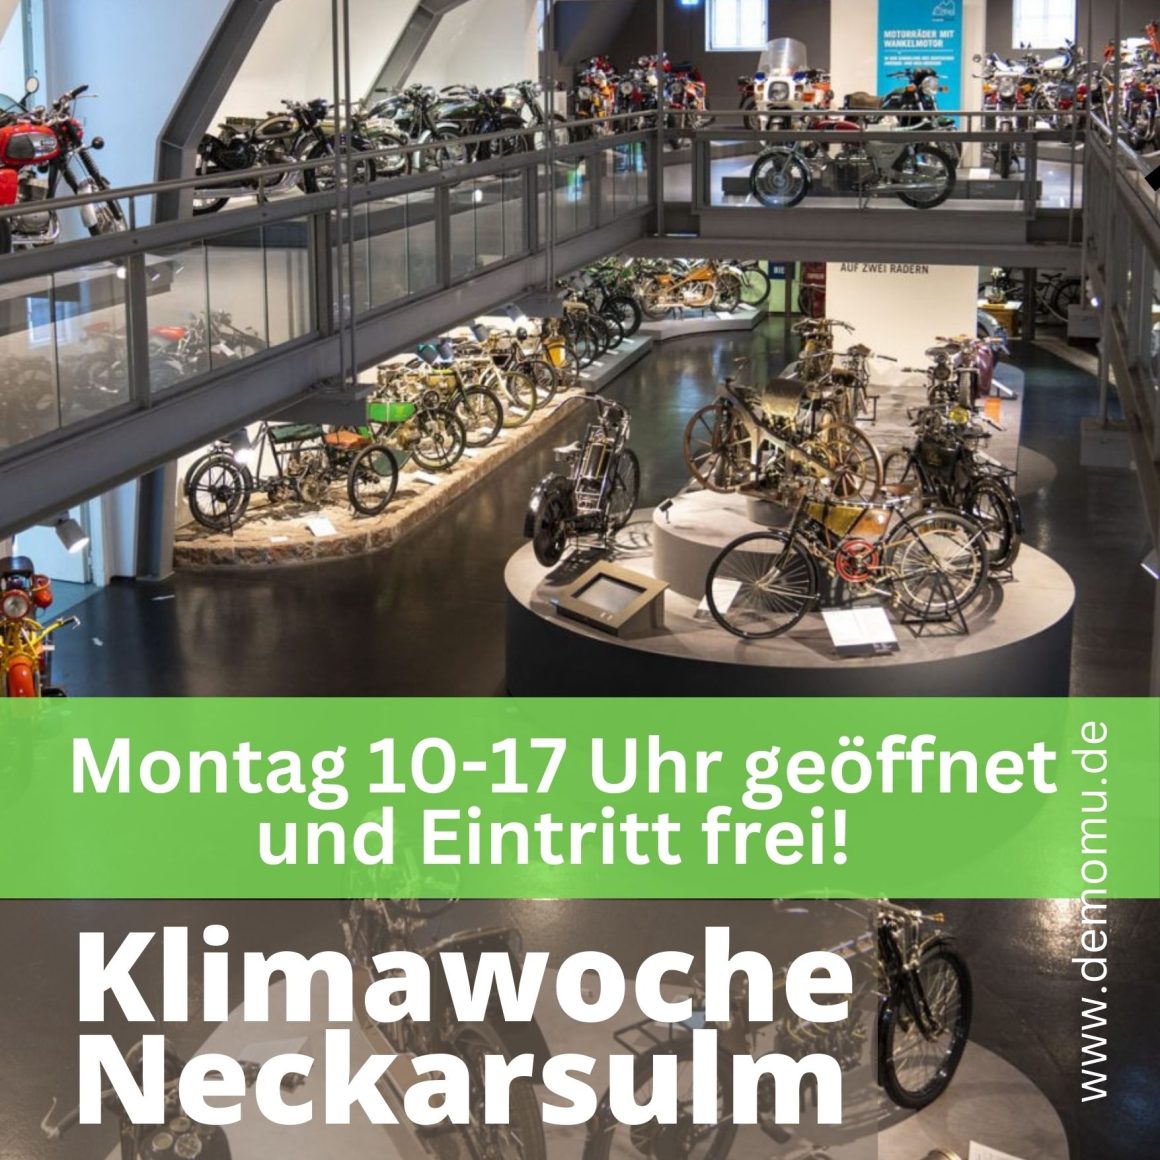 Klimawoche Neckarsulm – Führungsangebote und freier Eintritt am 20. März!